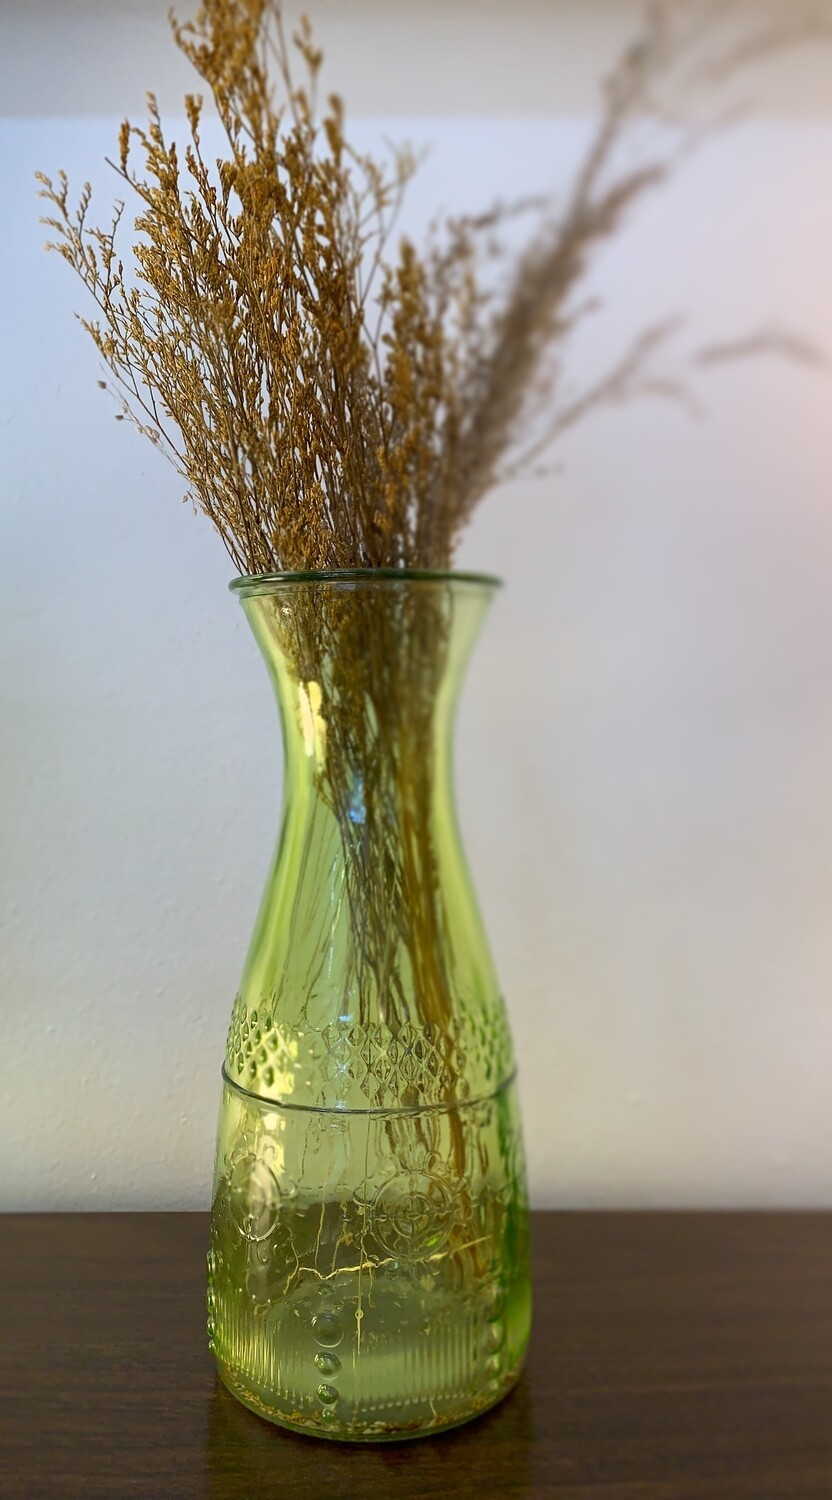 Green Vintage Glass Blenko-like Vase & stems 10”